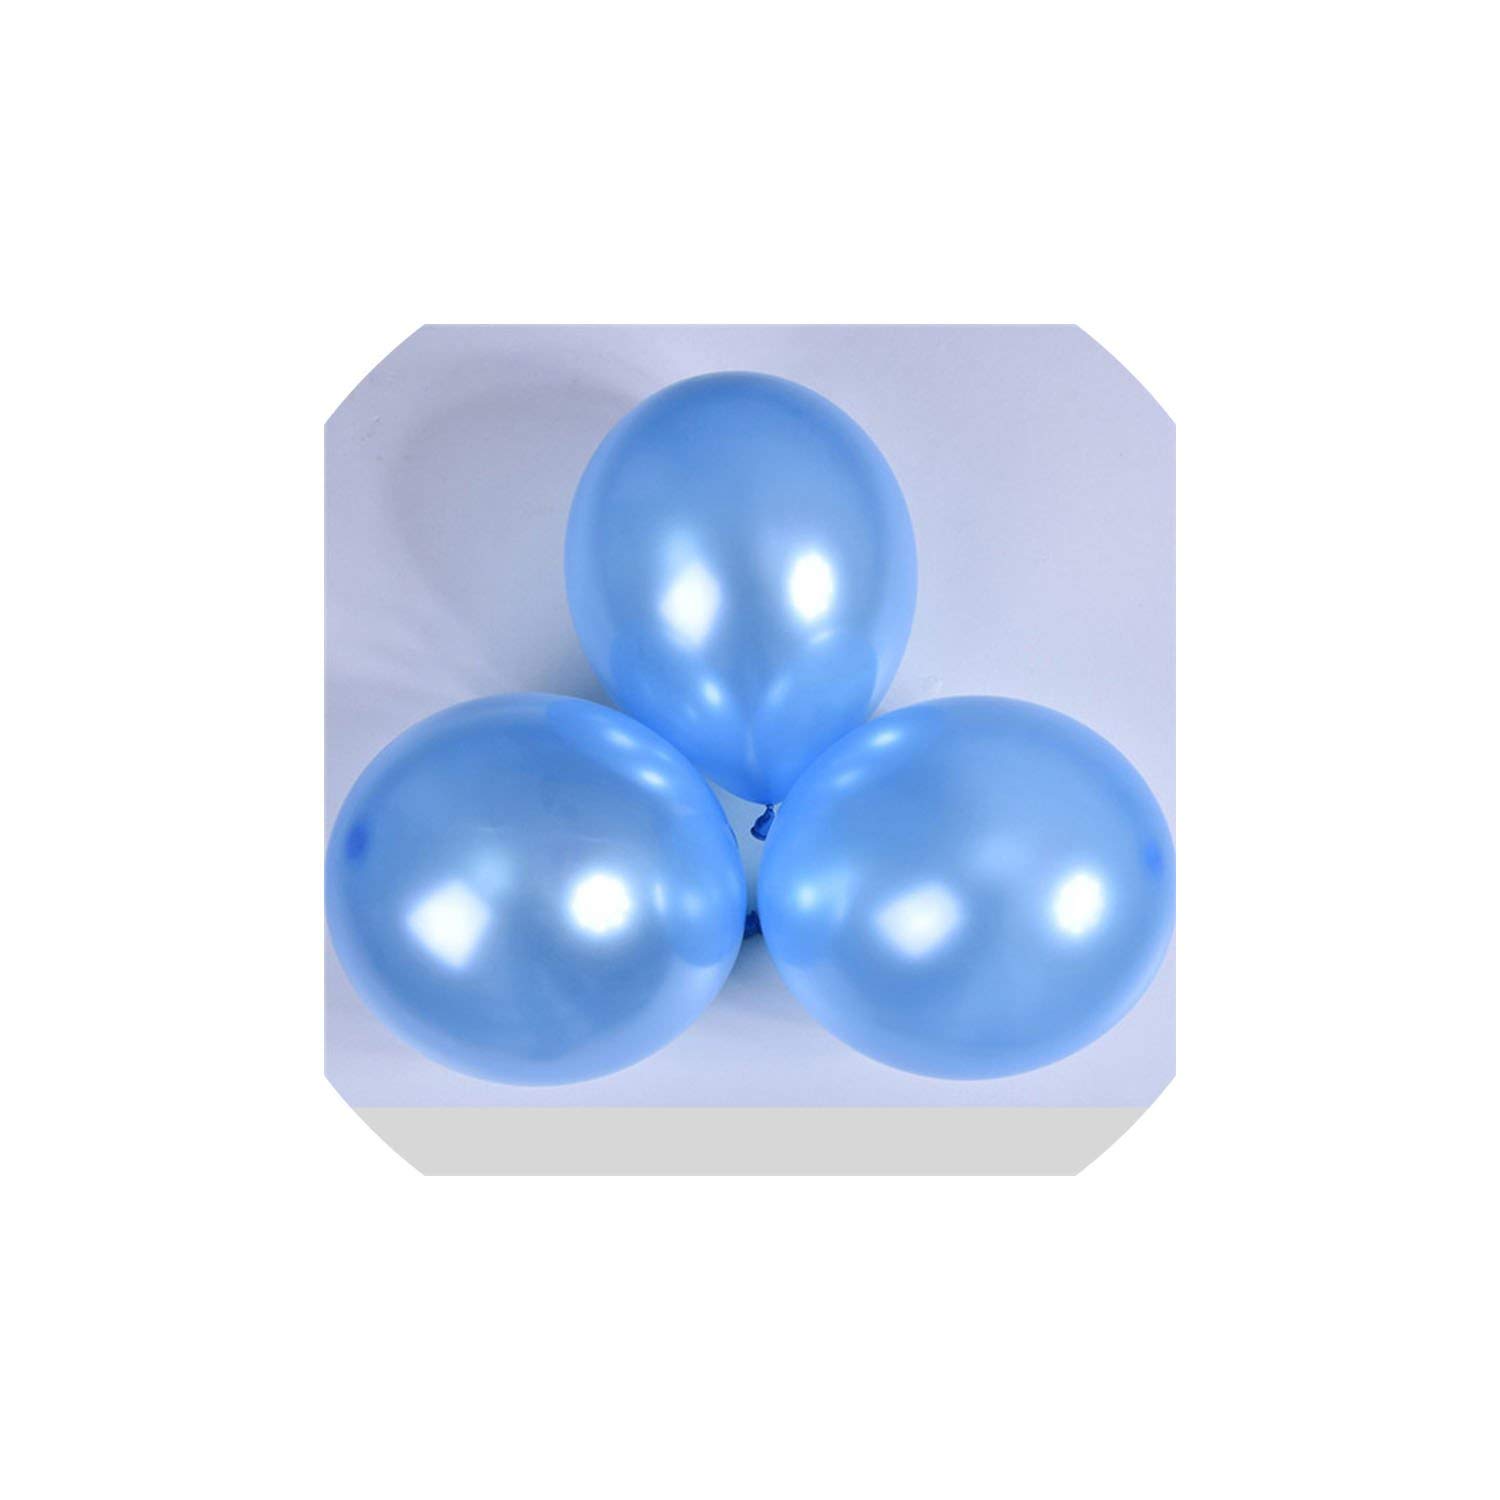 Metallisk Ballong i ljus Blå. 10 pack.